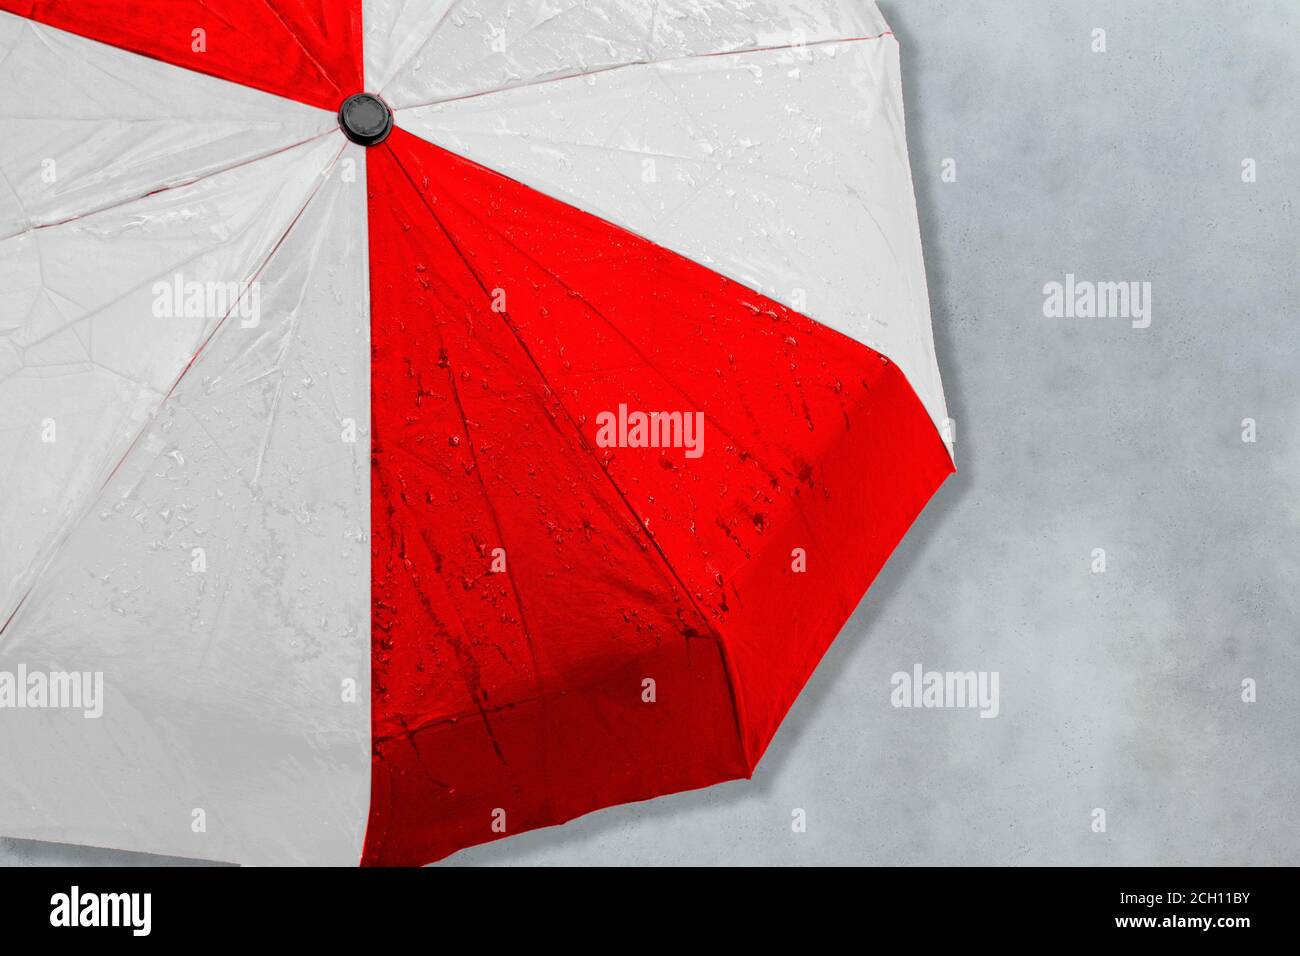 Der Regenschirm in den Farben der neuen Nationalflagge Weißrussland.  Konzept Banner der Menschen Protestbewegung Stockfotografie - Alamy